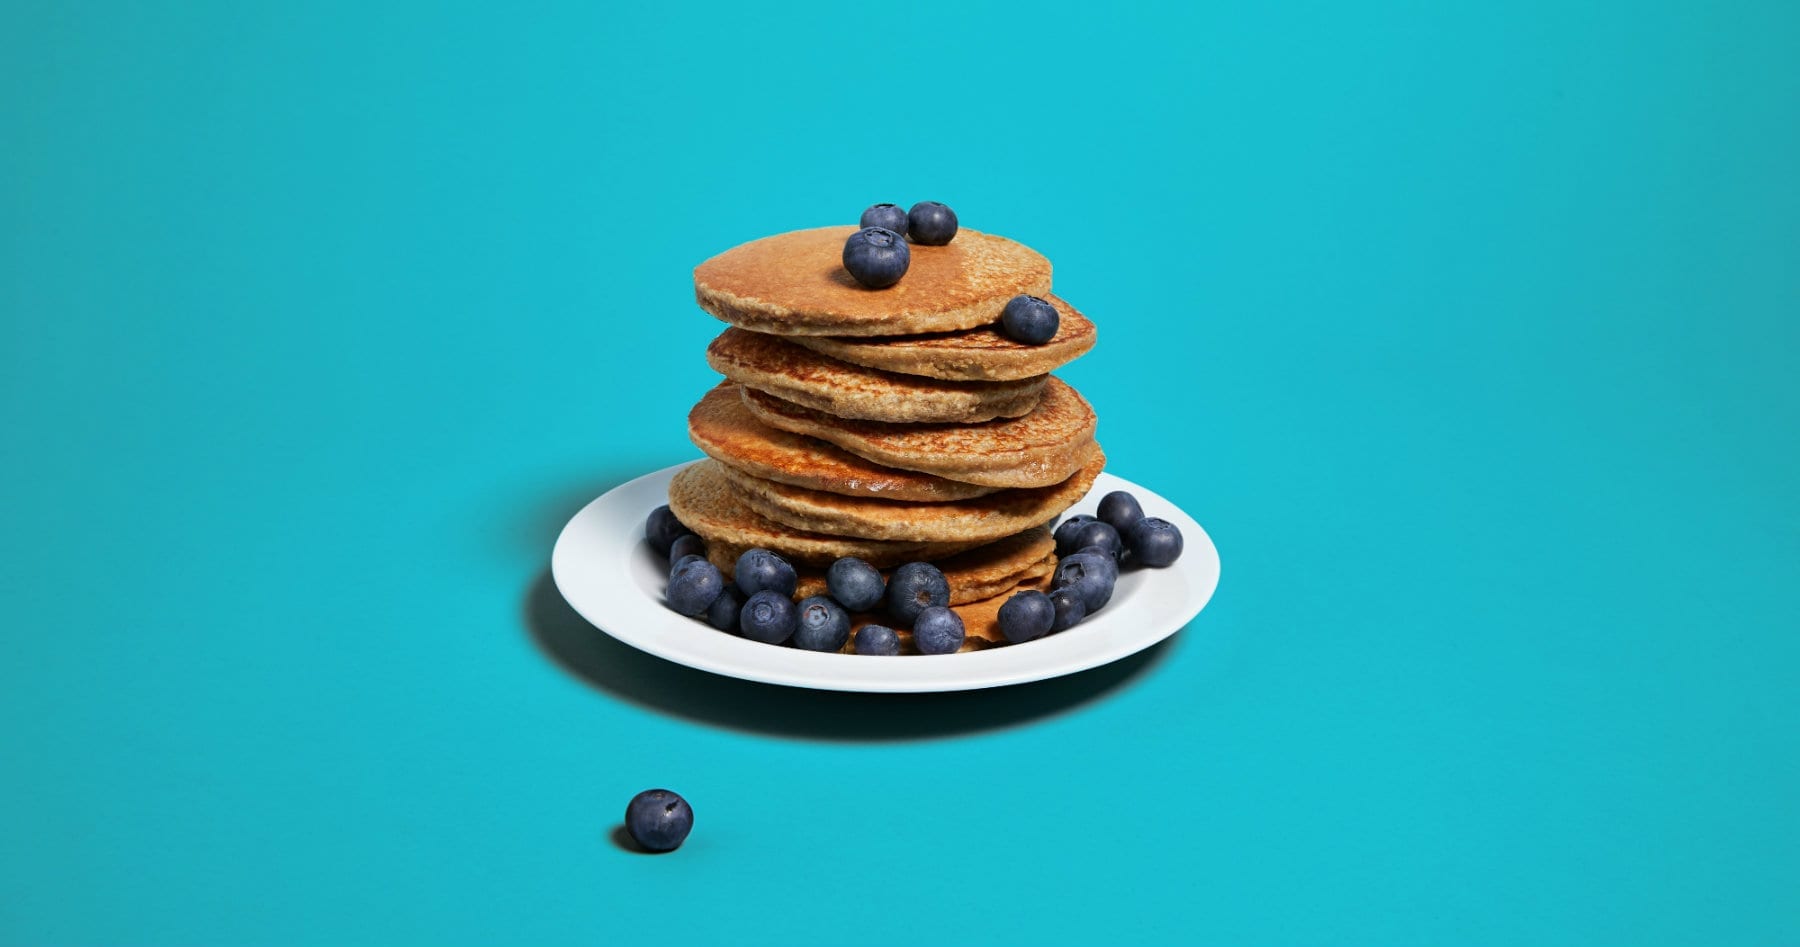 4 összetevős egyszerű, banános protein palacsinta recept | Pancake